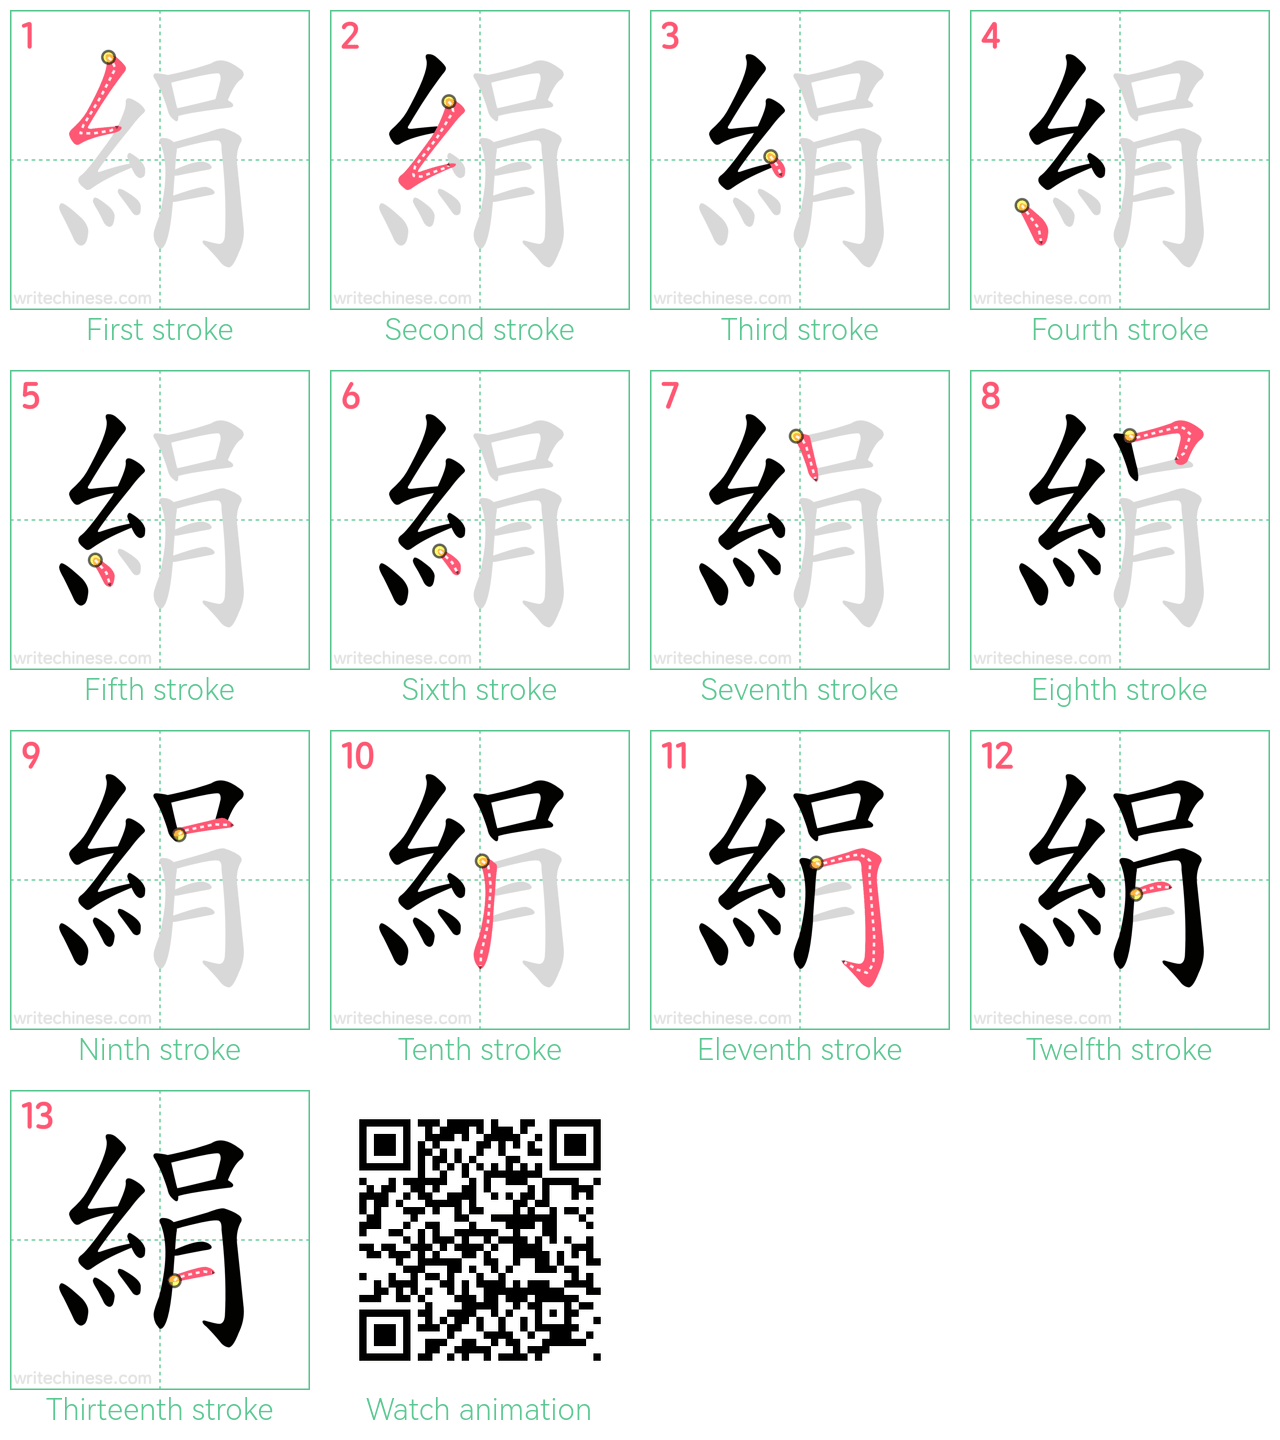 絹 step-by-step stroke order diagrams